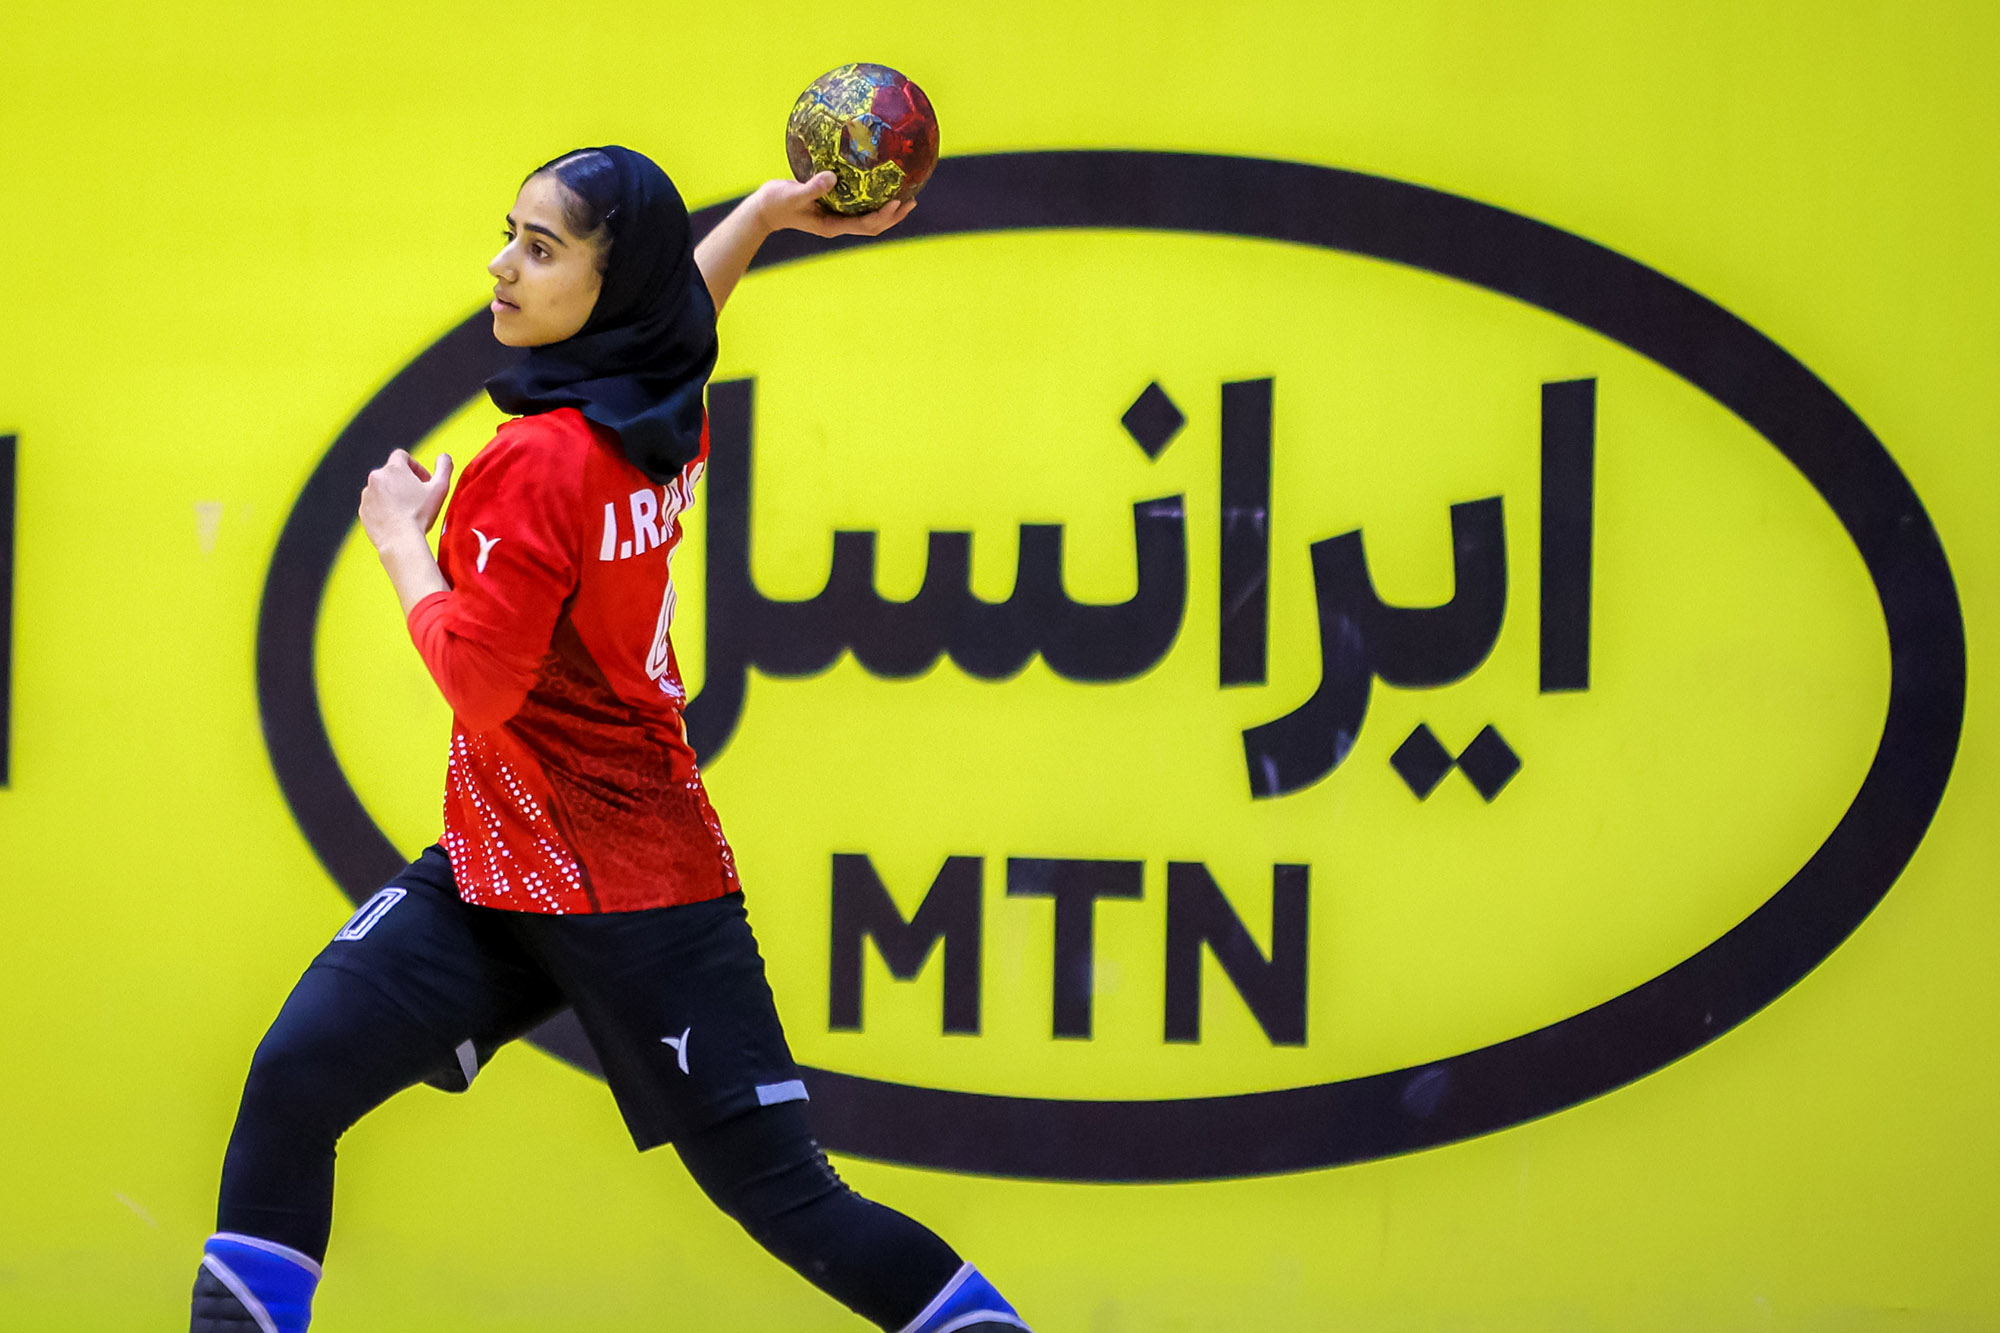 فدراسیون جهانی هندبال اعلام کرد: بانوی هندبالیست ایرانی، یکی از 9 استعداد برتر رقابت های قهرمانی جهان دانمارک